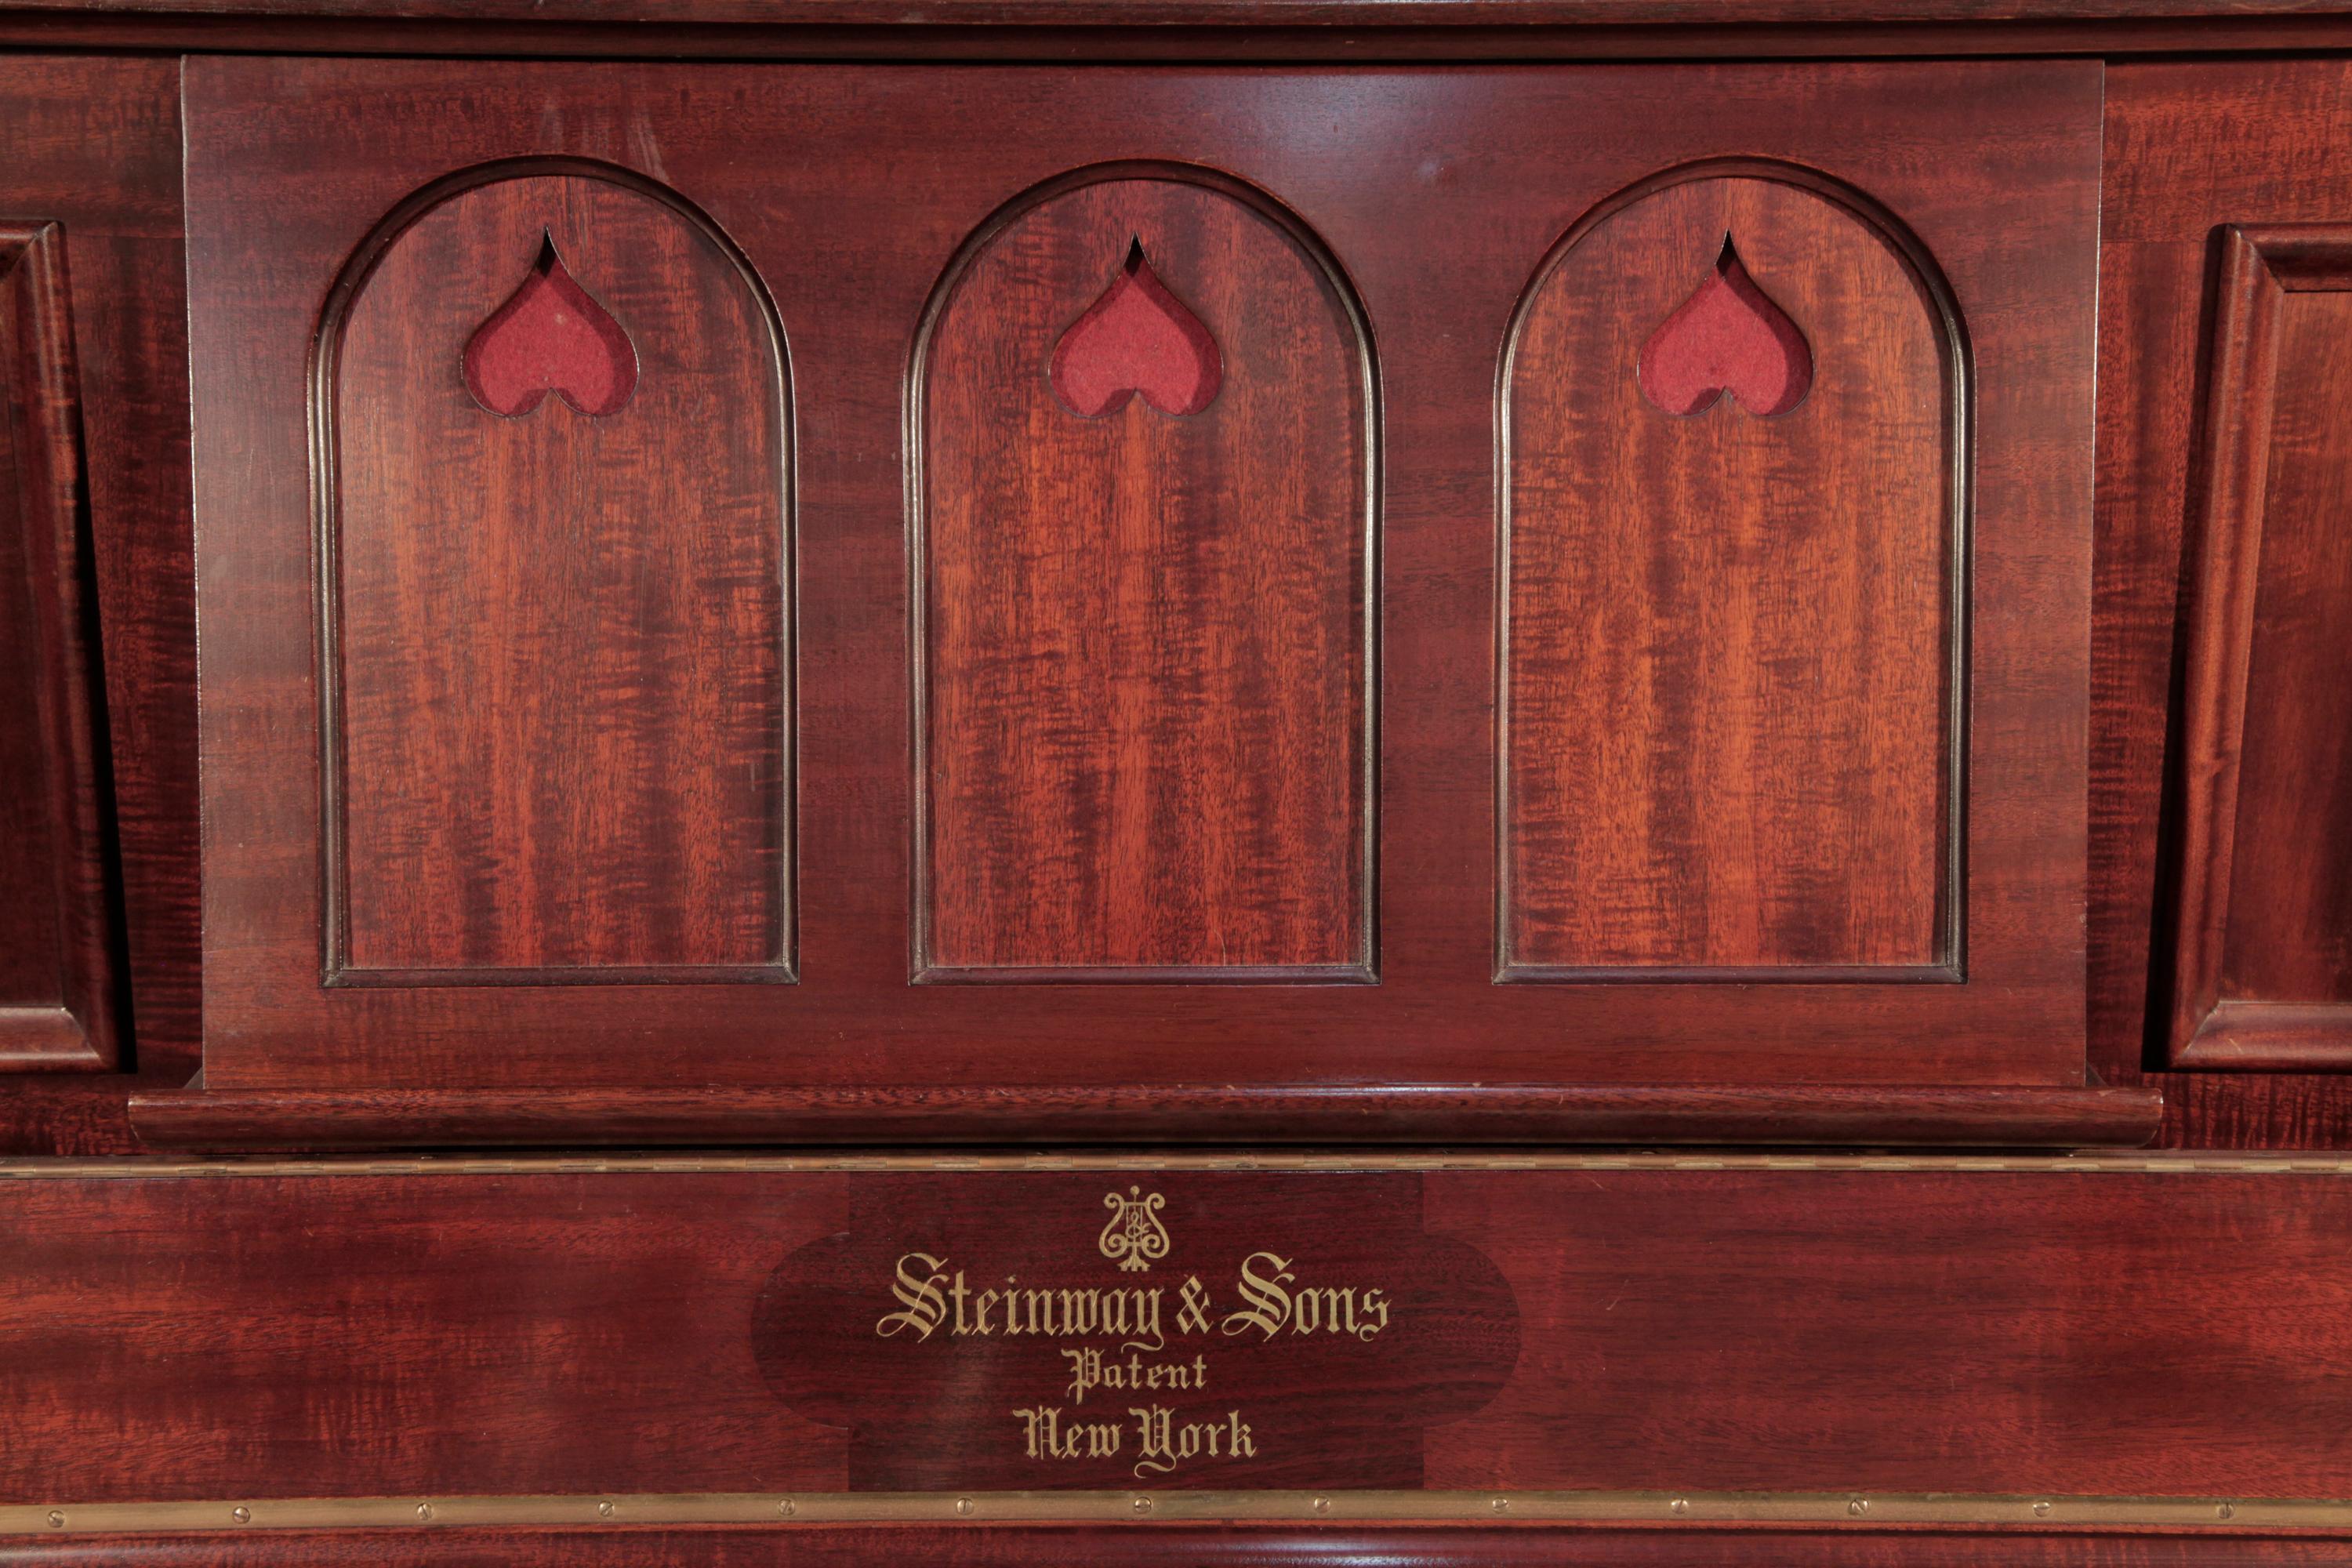 Piano droit Steinway vertegrand de style Arts and Crafts, 1905, avec caisse en acajou figuré. Le meuble est doté de grands pieds sculpturaux avec une architrave arquée visible depuis le profil du piano. Le meuble présente un large pupitre à trois